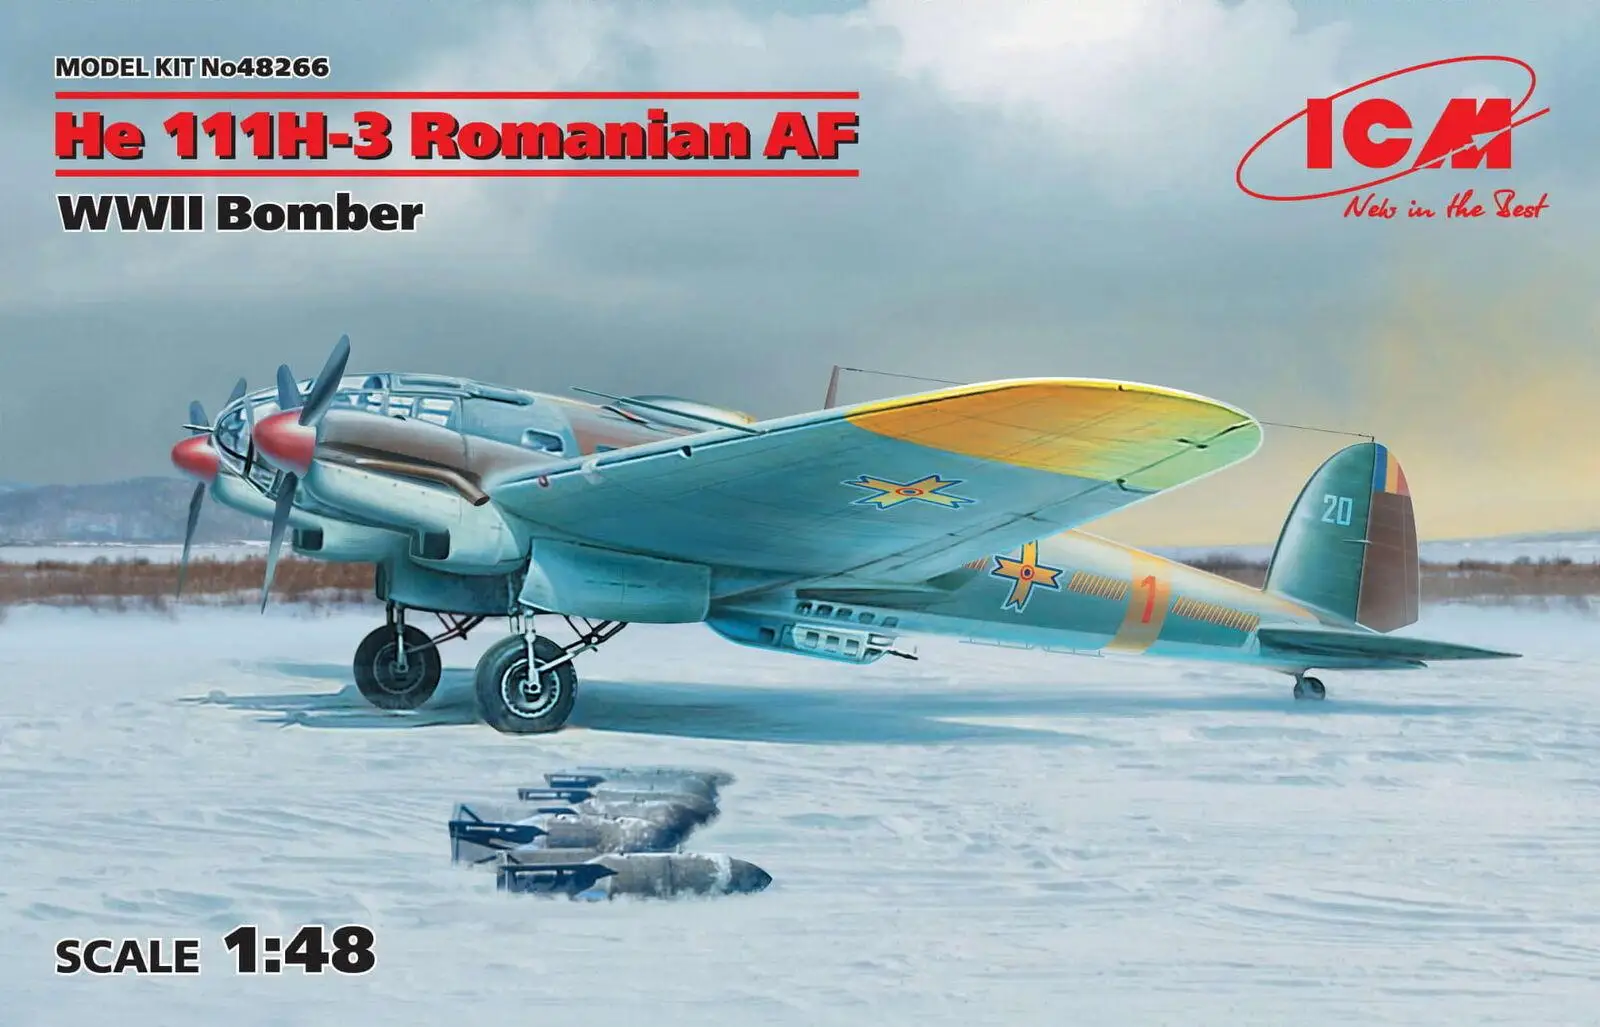 

ICM48266 ICM Масштаб 1:48 He 111H-3 румынская AF, набор моделей бомбардировщика Второй мировой войны